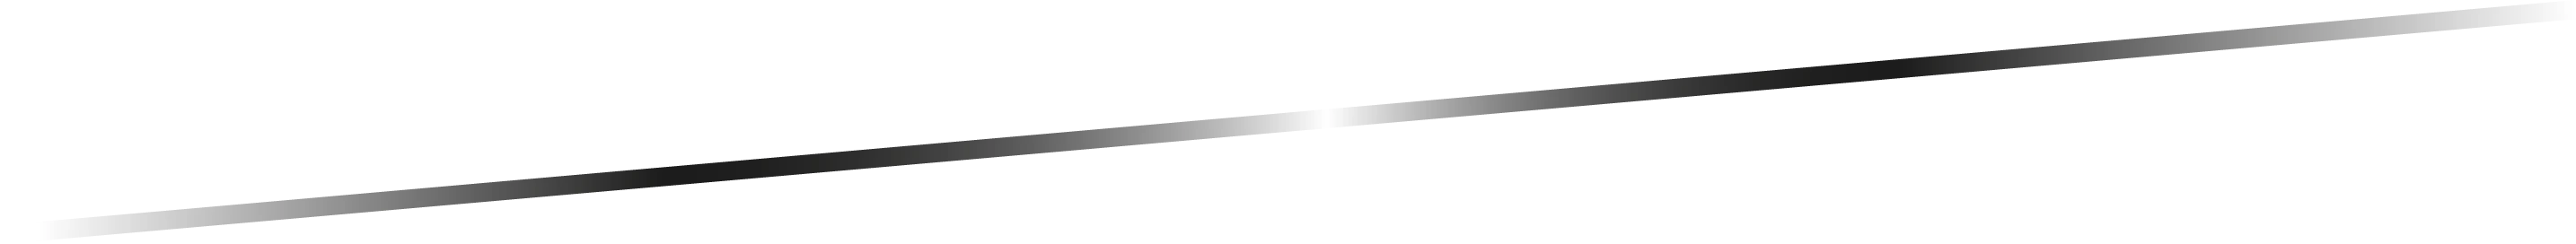 Línea diagonal